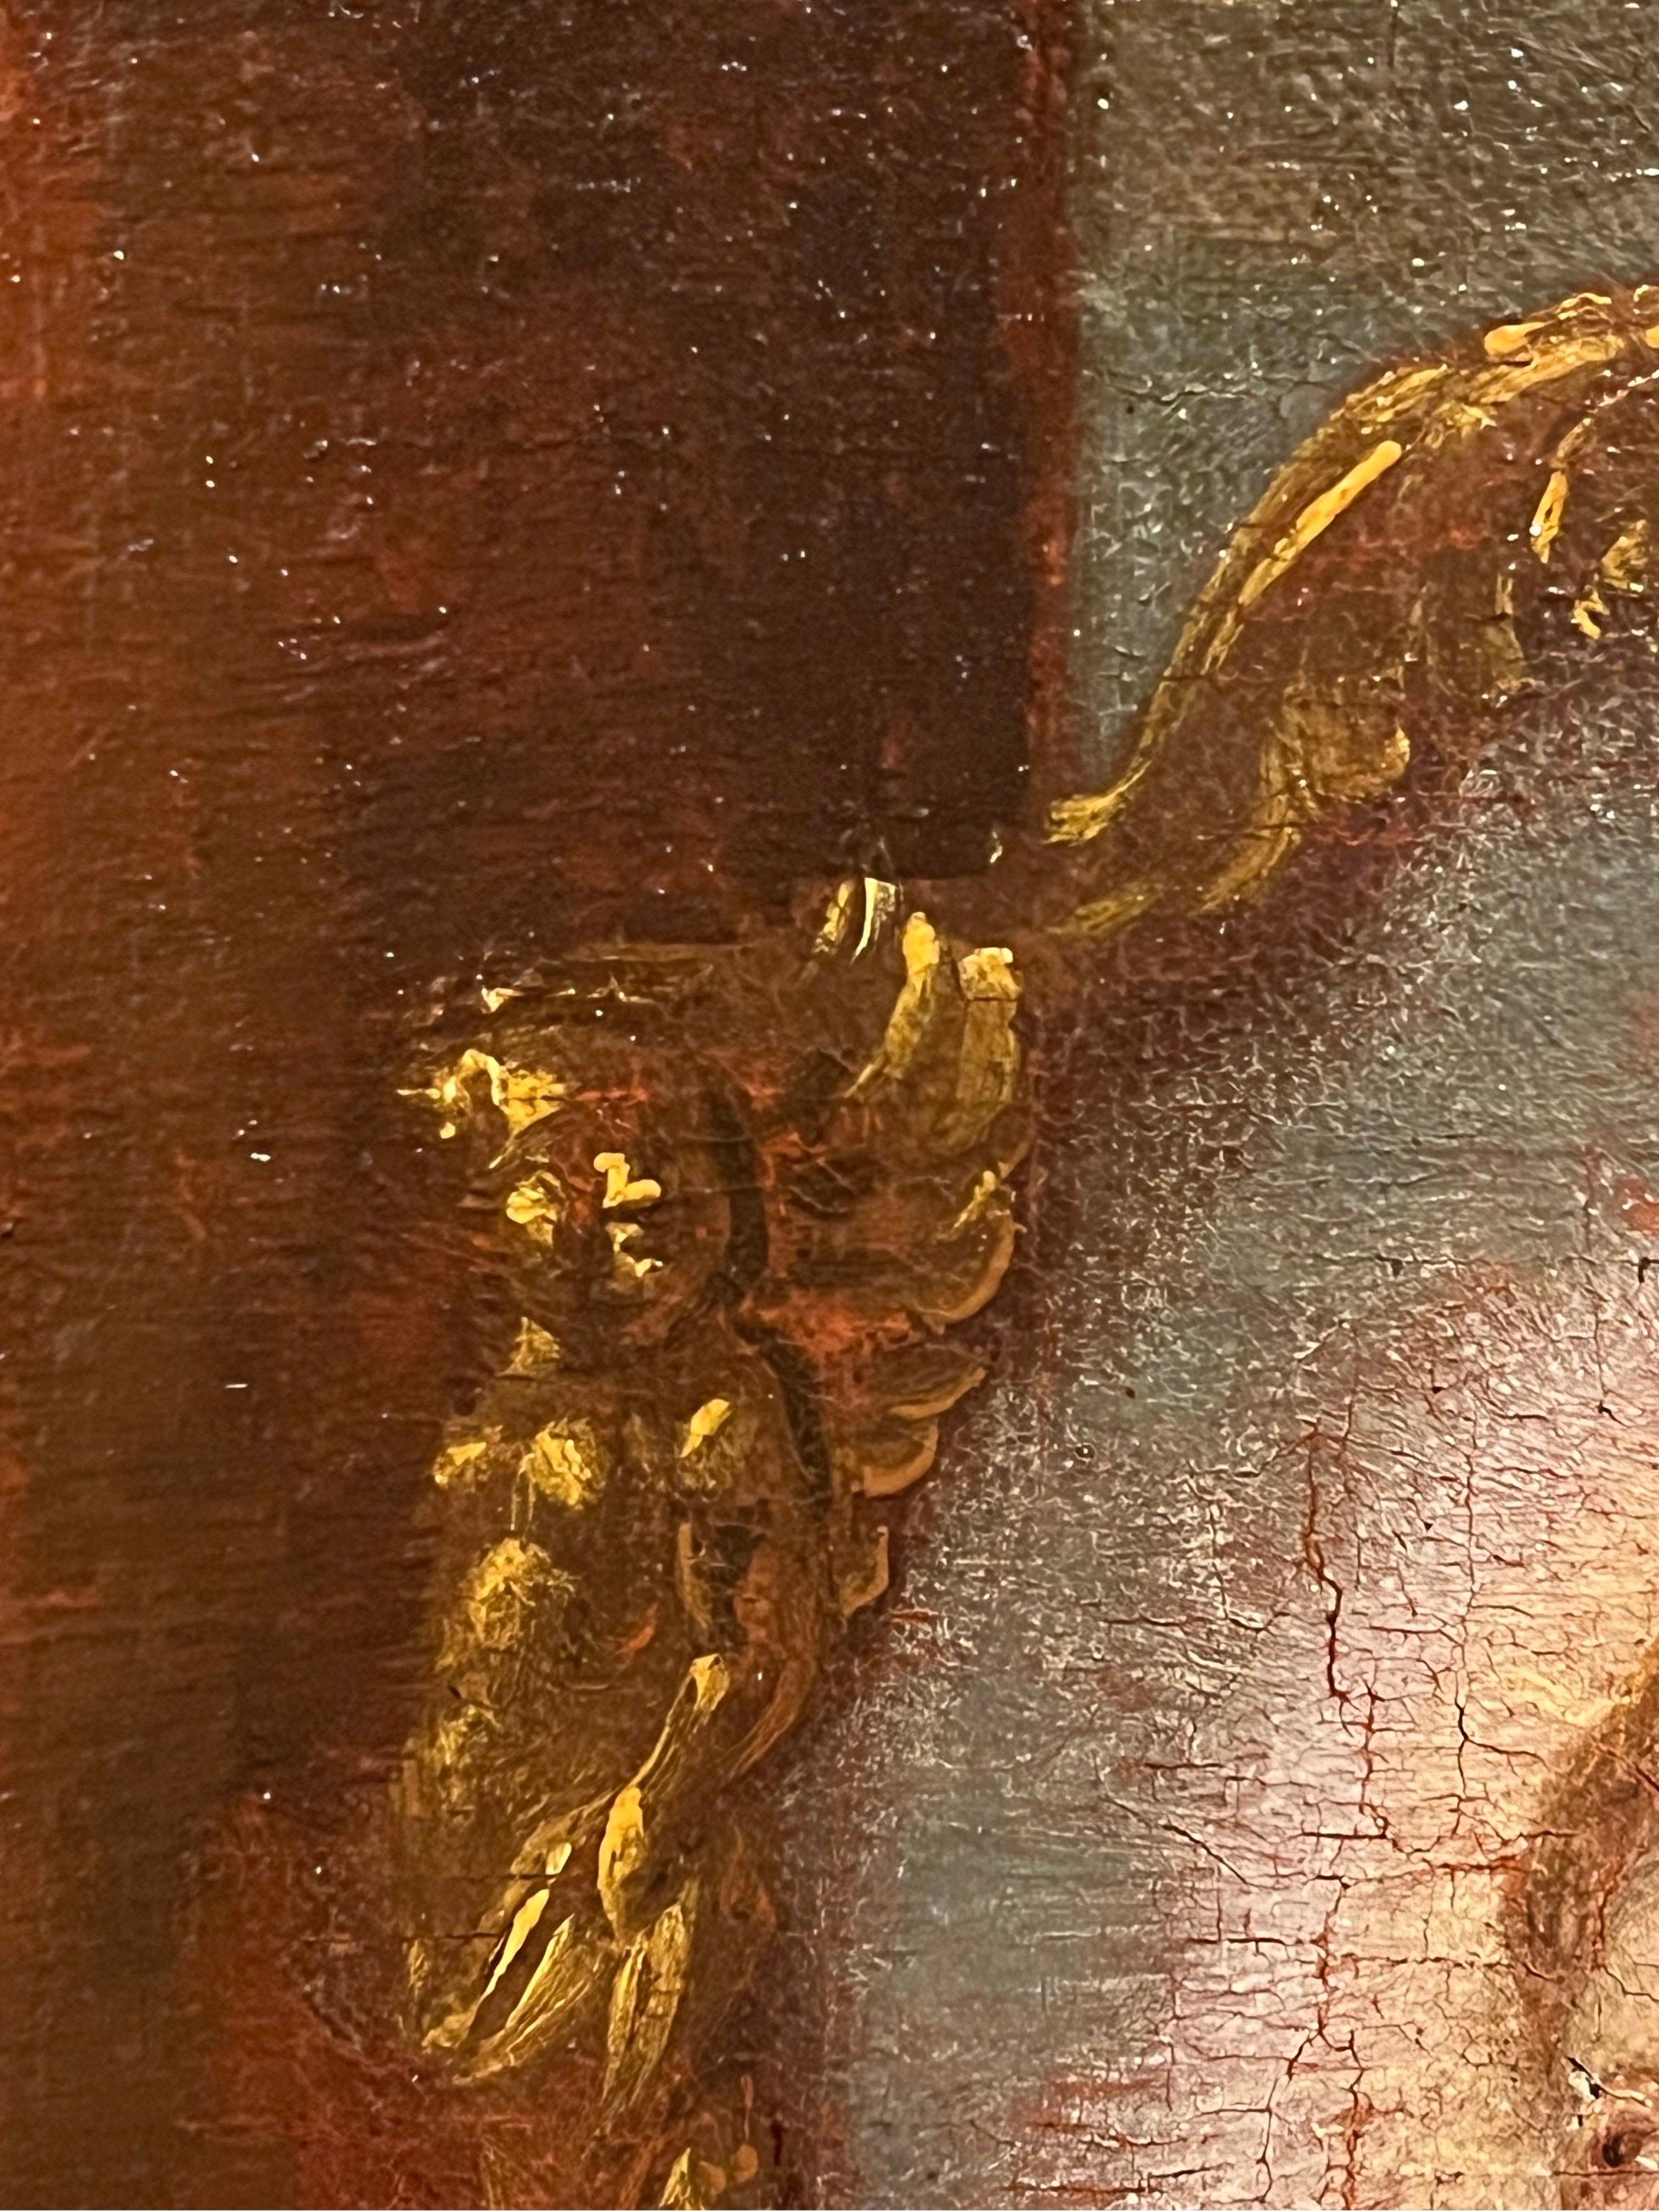 Fin du XVIIe, début du XVIIIe siècle, peinture à l'huile de maître ancienne représentant une allégorie de Lady Justice tenant les démons à distance.

Notre tableau, probablement une esquisse pour une œuvre beaucoup plus grande, transmet un message